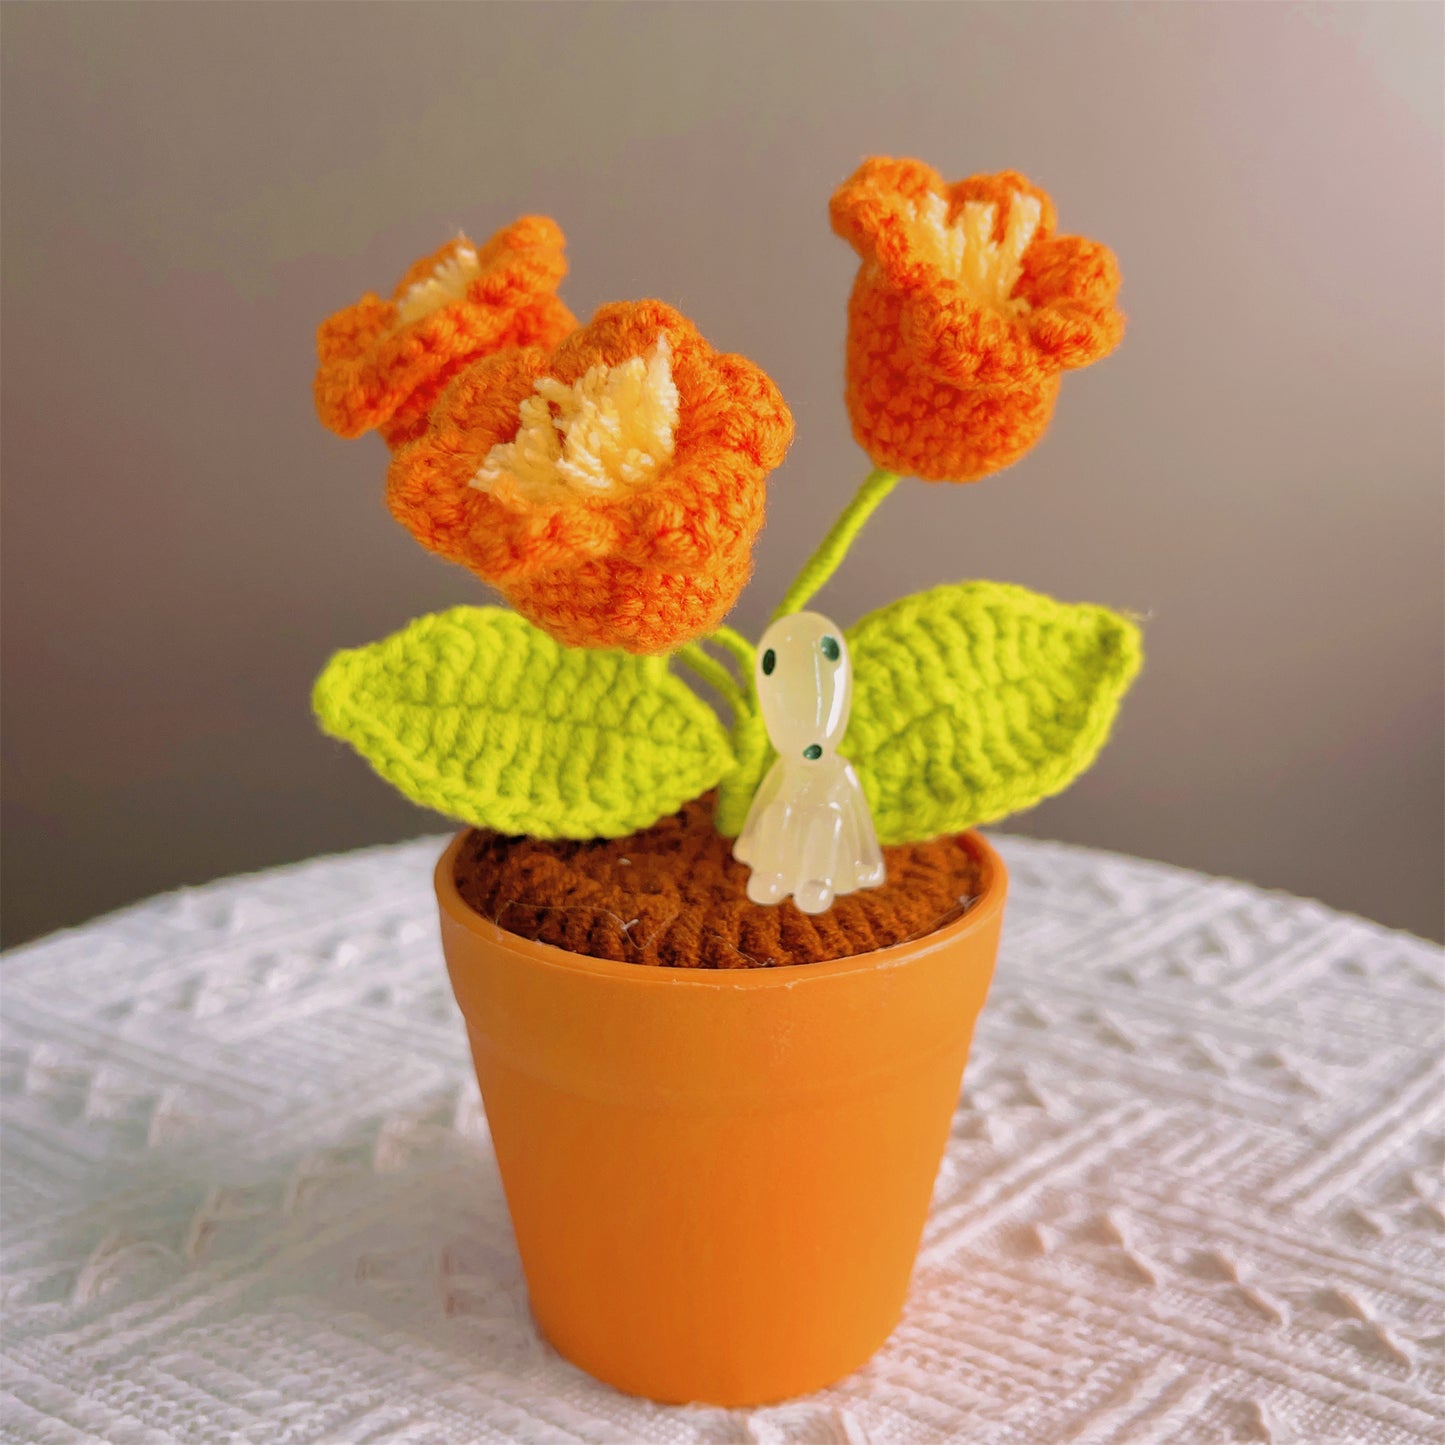 Handgefertigte gehäkelte Maiglöckchenpflanze – leuchtende LED-Blumen – einzigartige Wohndekoration – perfektes Geschenk für Pflanzenliebhaber – handgefertigtes Garn